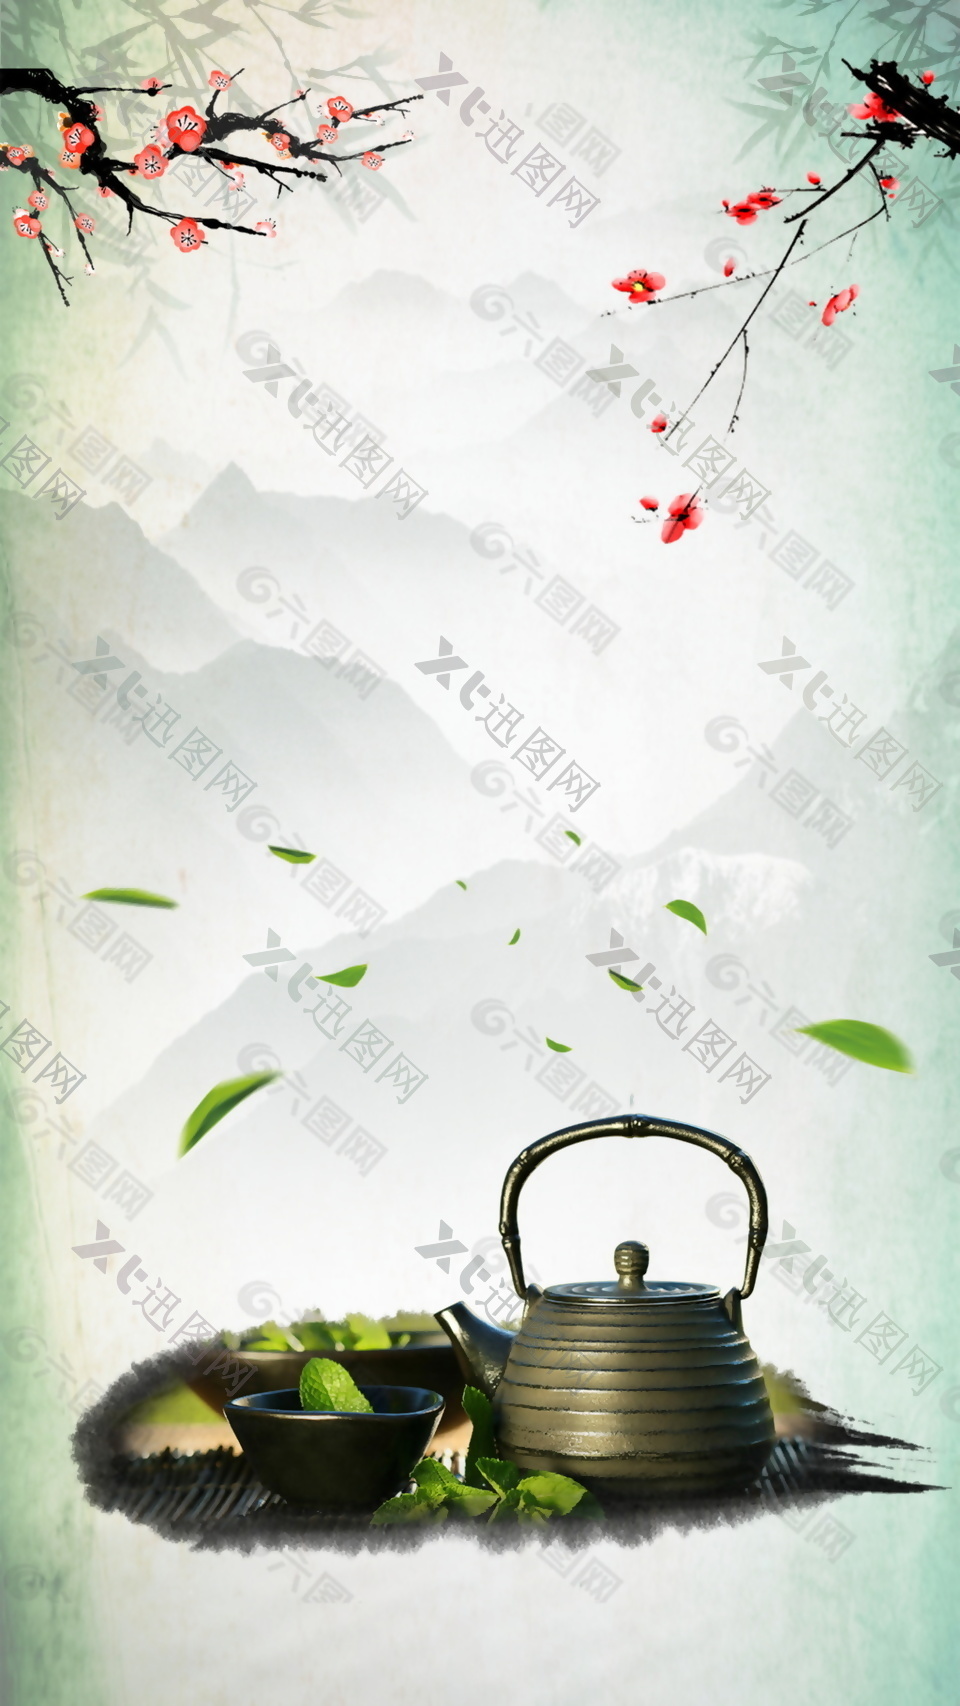 中国风茶叶文化背景设计模板